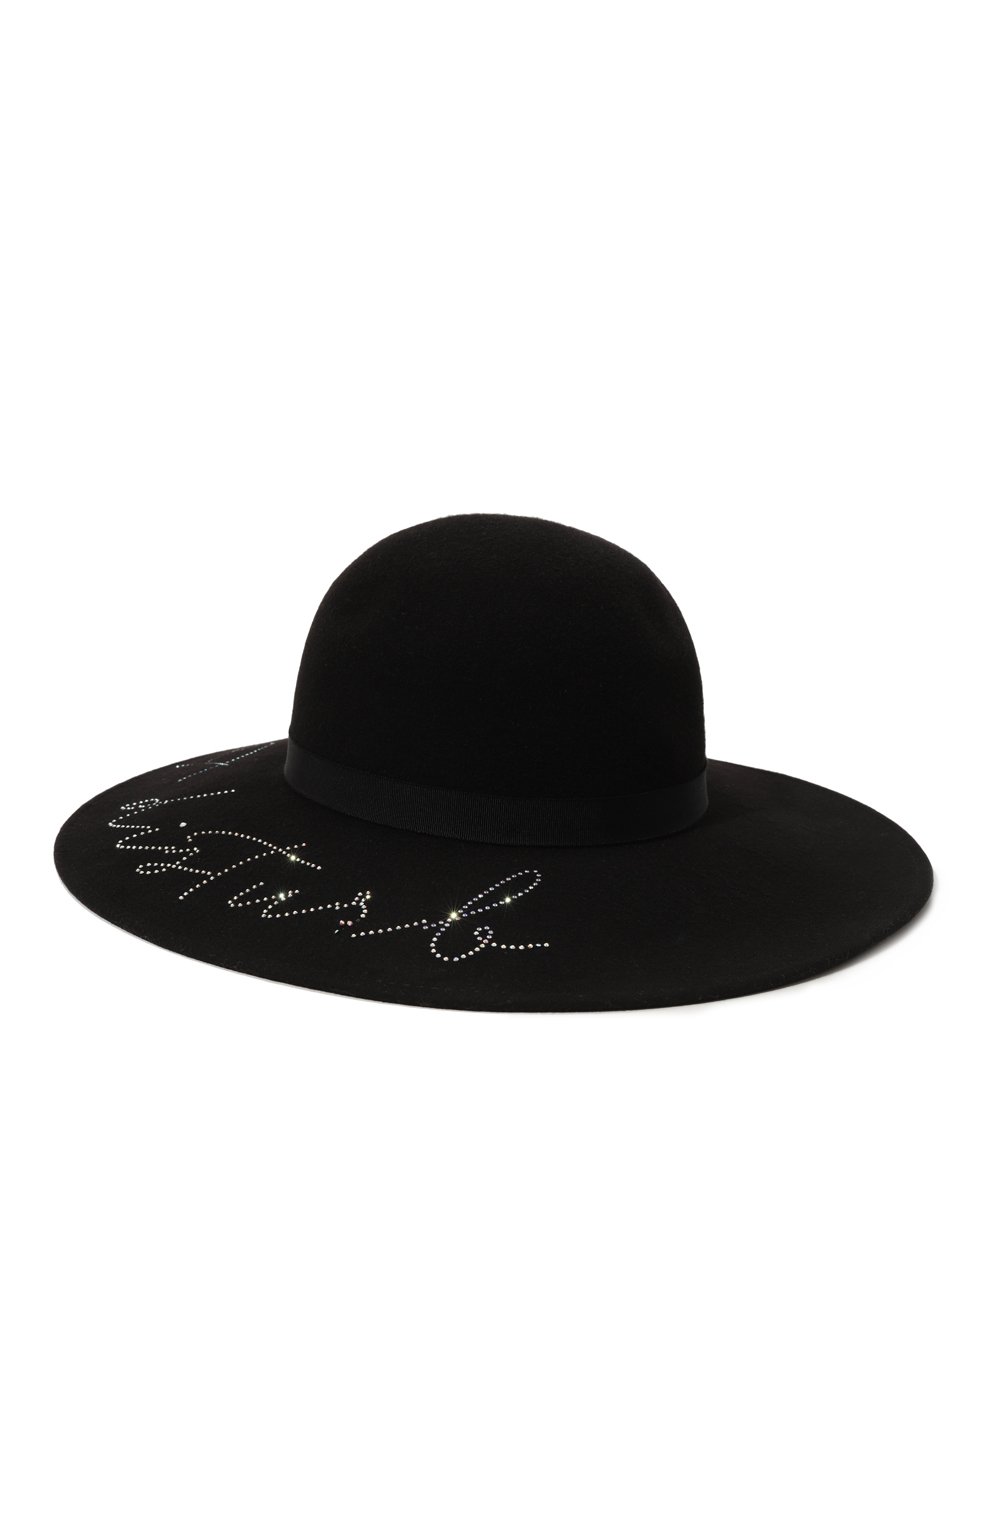 Шерстяная шляпа с отделкой стразами Eugenia Kim 28008-01517